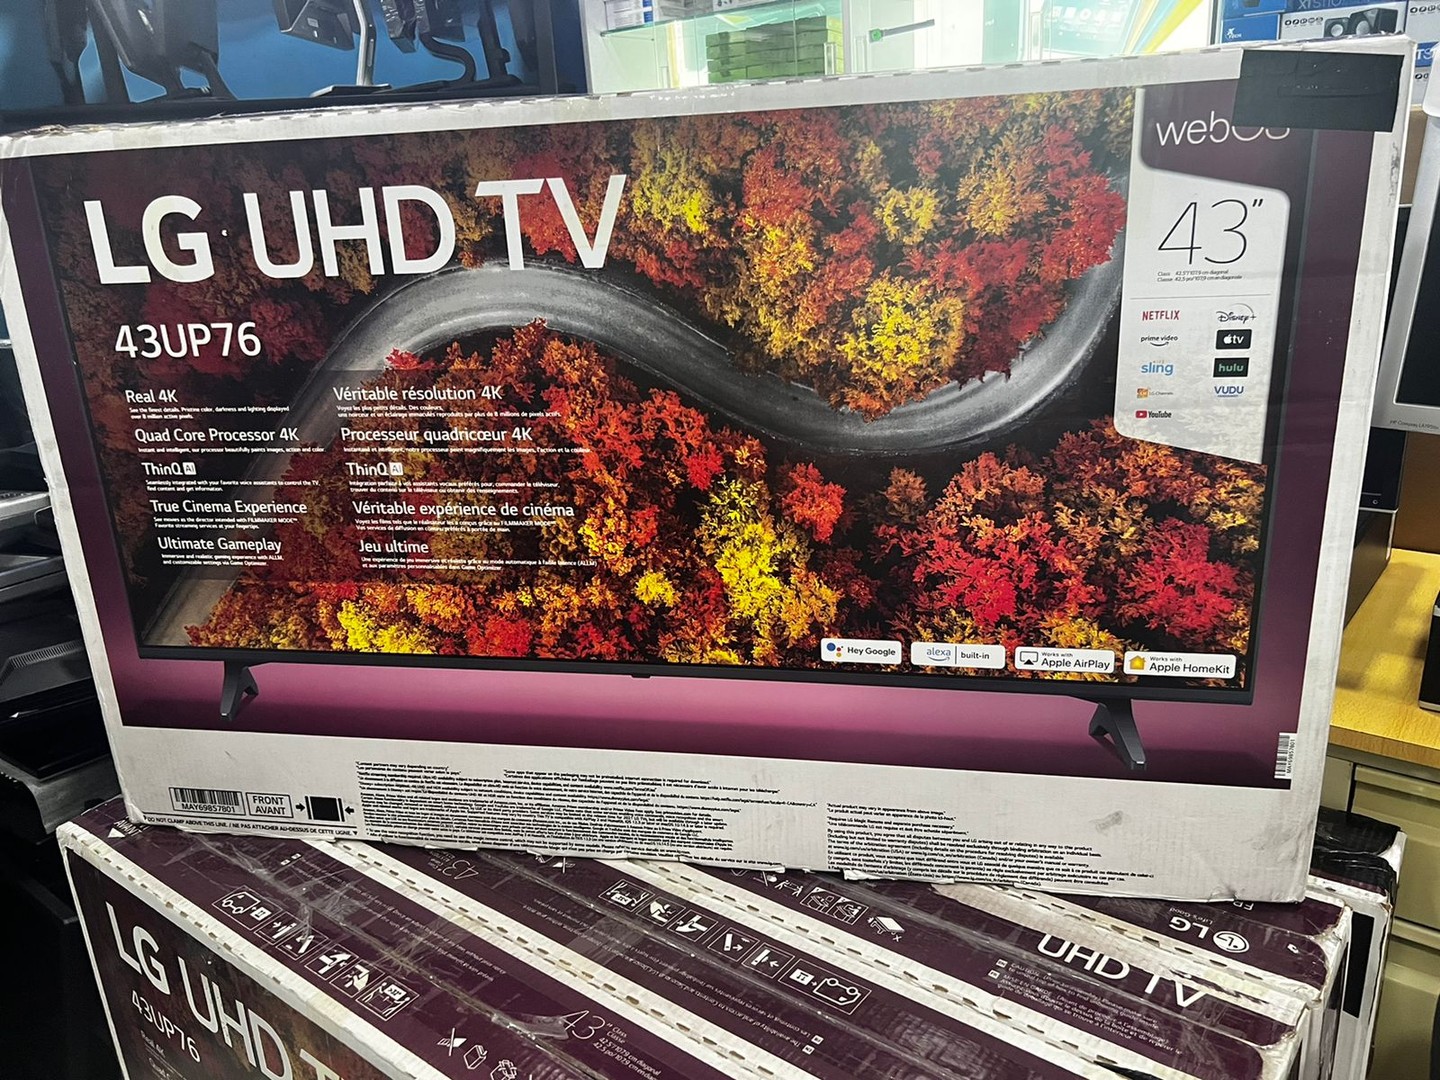 tv - Tv LG Smart  DE 43 PUL. 43UP76 UHD '' 4K 1